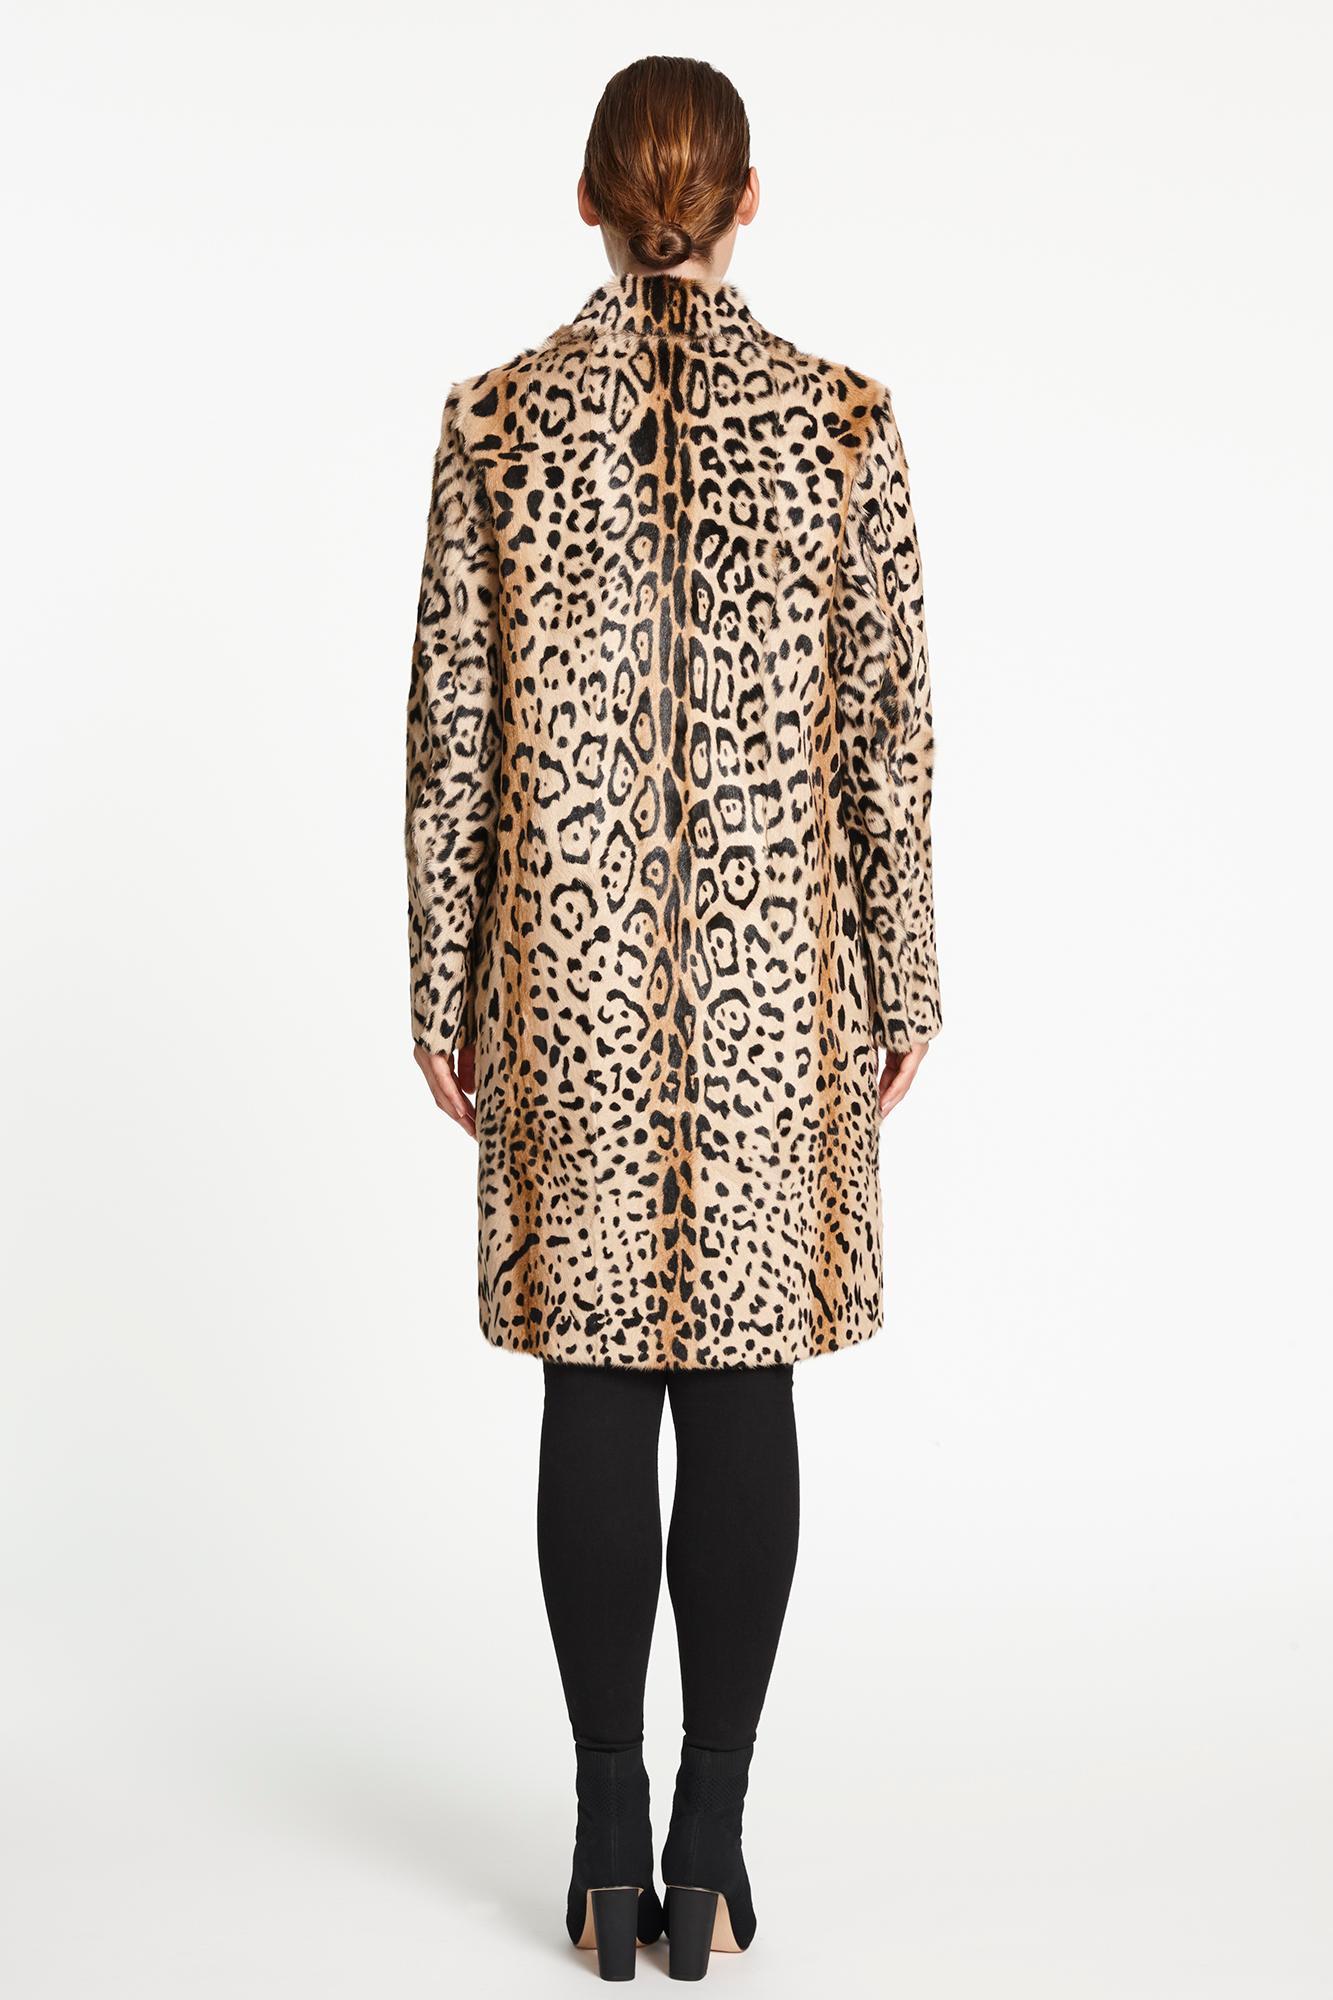 Verheyen London Leopard Print Coat in Natural Goat Hair Fur UK 10 - Brand New  3